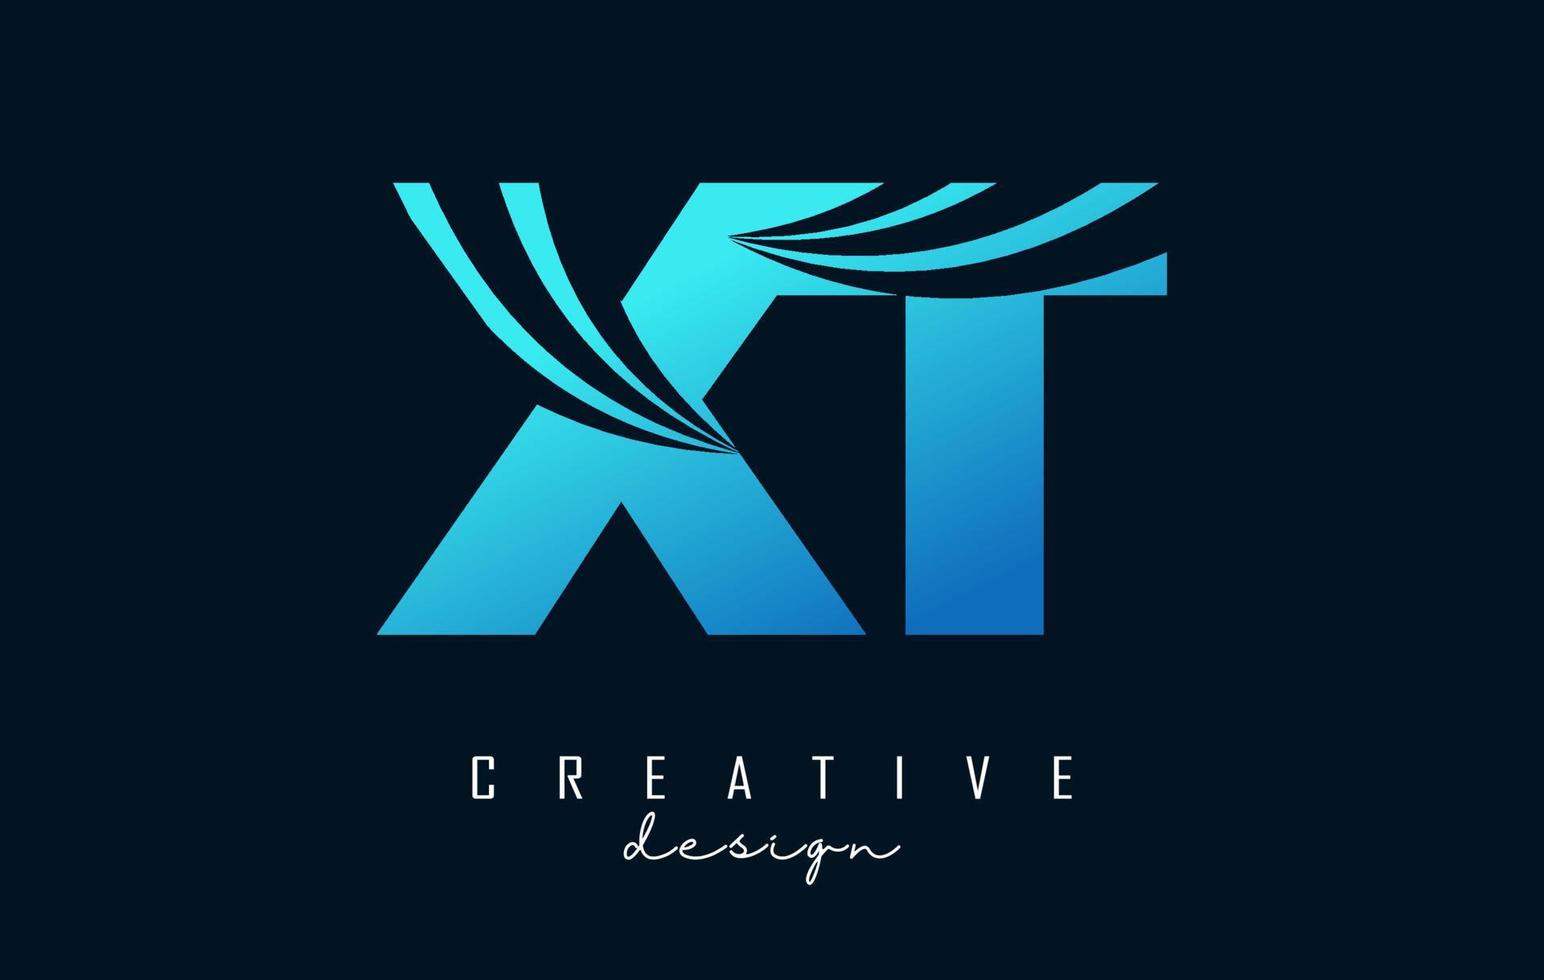 kreativa blå bokstäver xt xt-logotyp med ledande linjer och vägkonceptdesign. bokstäver med geometrisk design. vektor